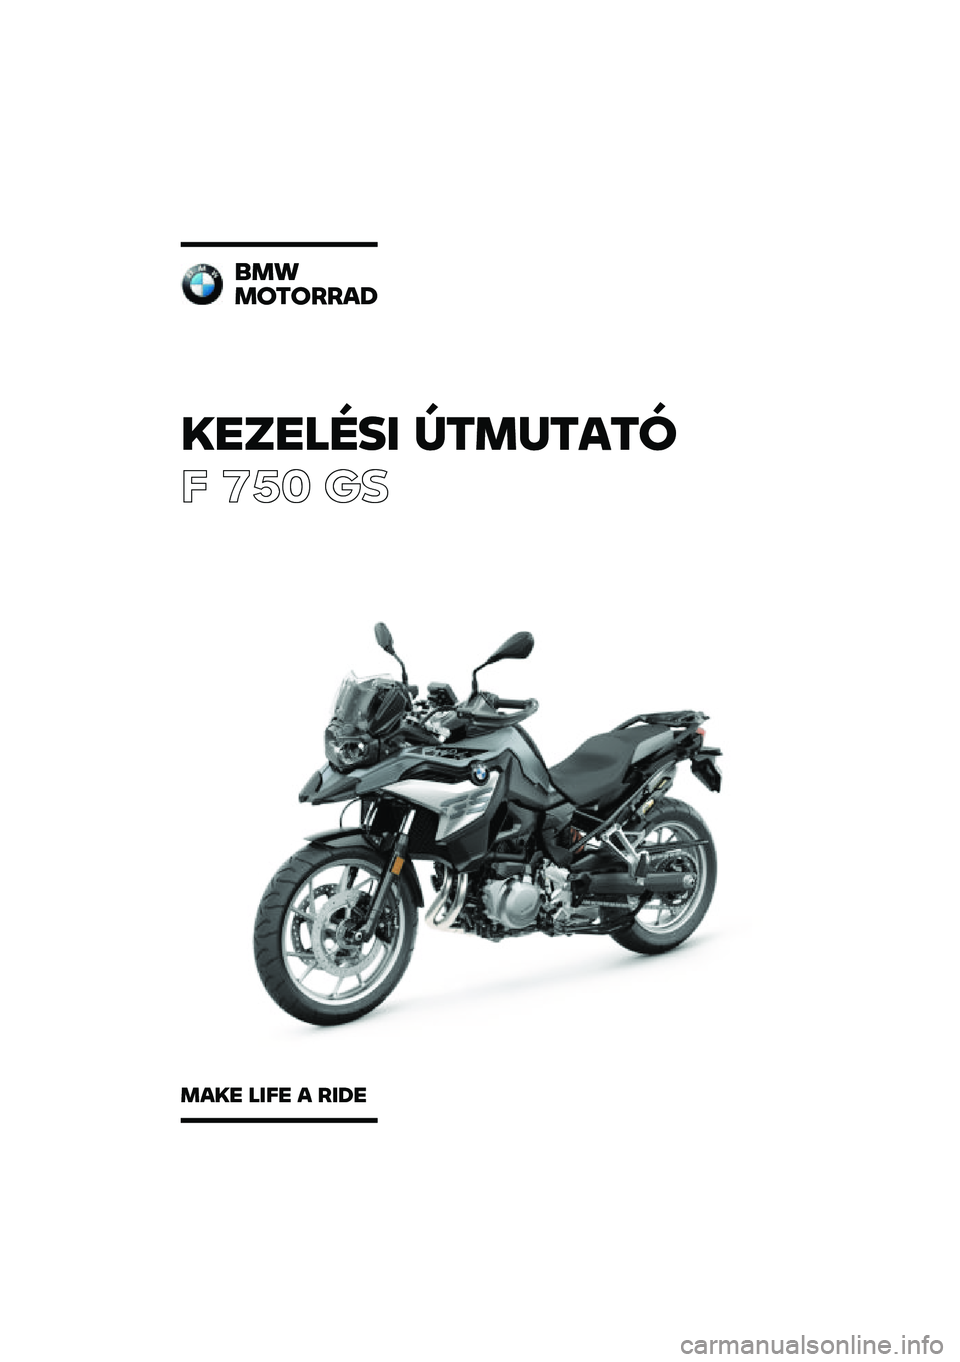 BMW MOTORRAD F 750 GS 2020  Kezelési útmutató (in Hungarian) �������\b�	 �
�\f�
��\f��\f�
� ��� �\b�	
��
�
�
��\f�����
�
��� ��	�� � ��	�� 